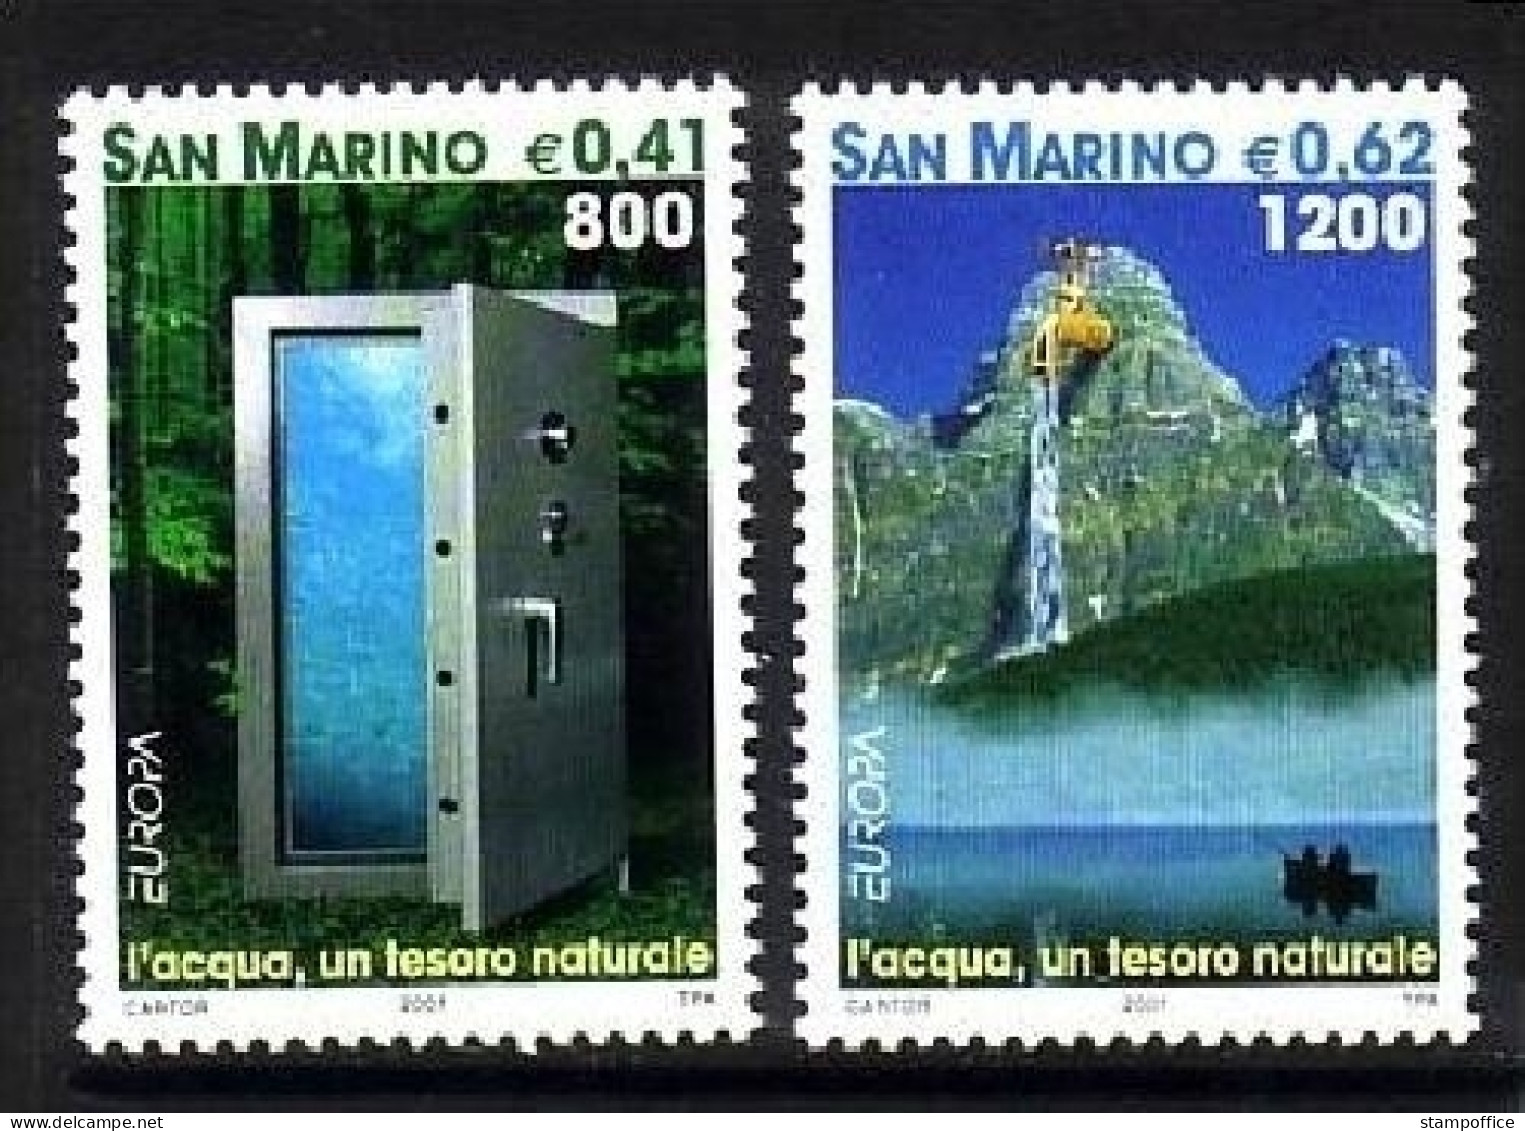 SAN MARINO MI-NR. 1950-1951 POSTFRISCH(MINT) EUROPA 2001 WASSER WALD BERGE - 2001